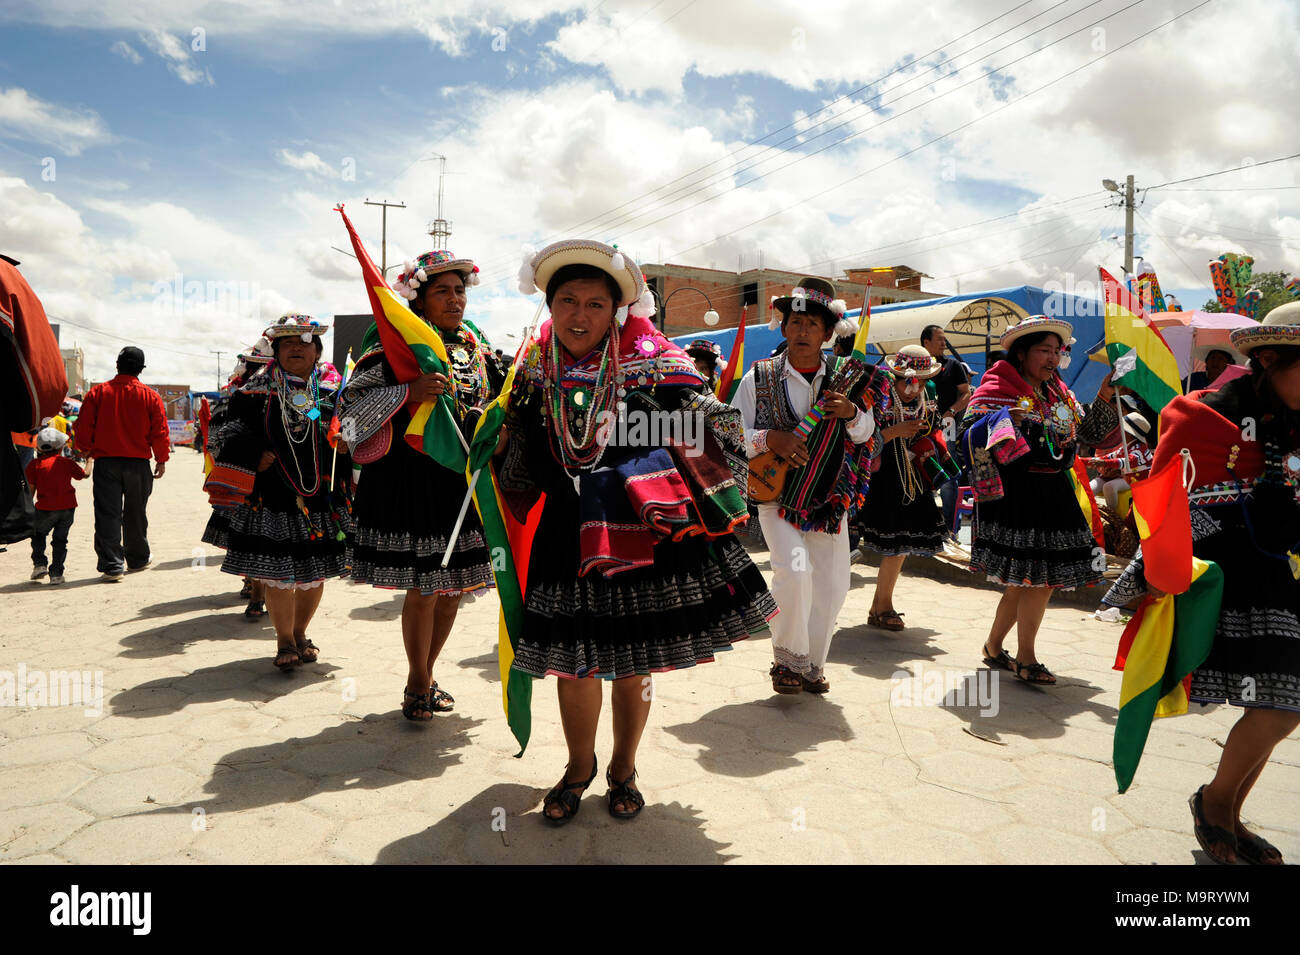 Mujer bailando en ropa tradicional durante un festival en centro de Uyuni, Bolivia Fotografía de stock -